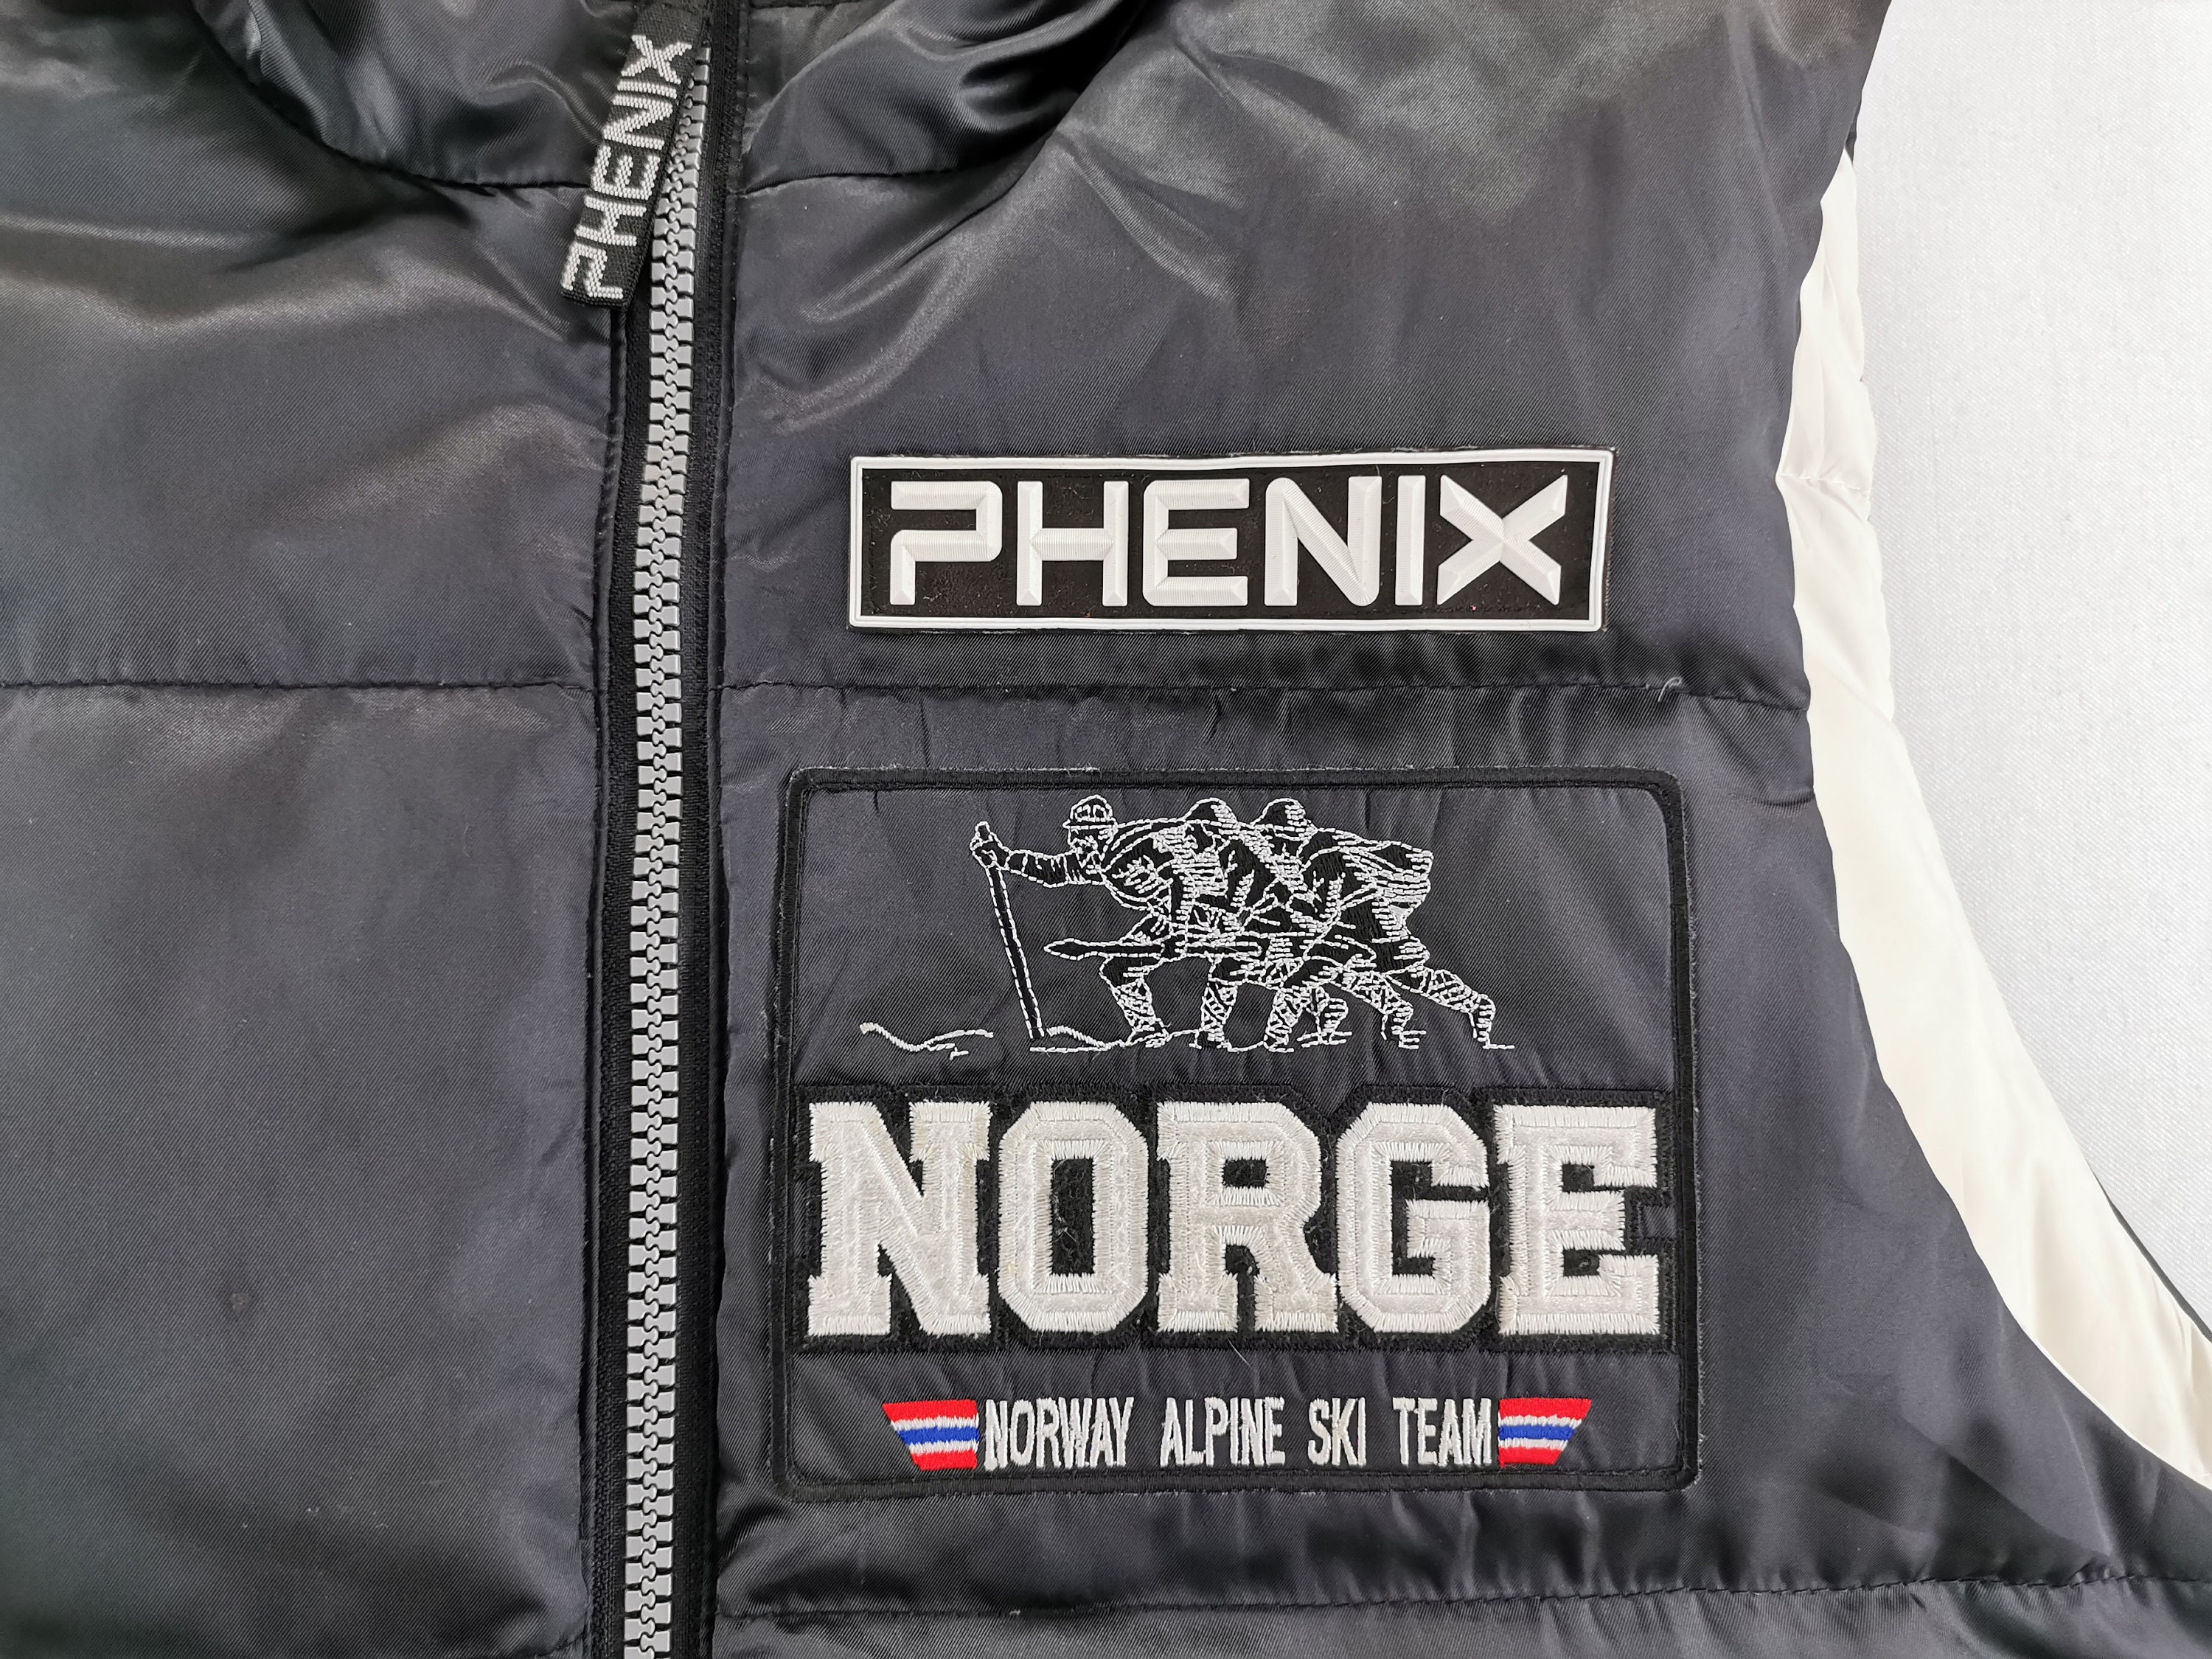 Norge Jacket Vintage Norge Vest Jacket Vintage Phenix Norge | Etsy